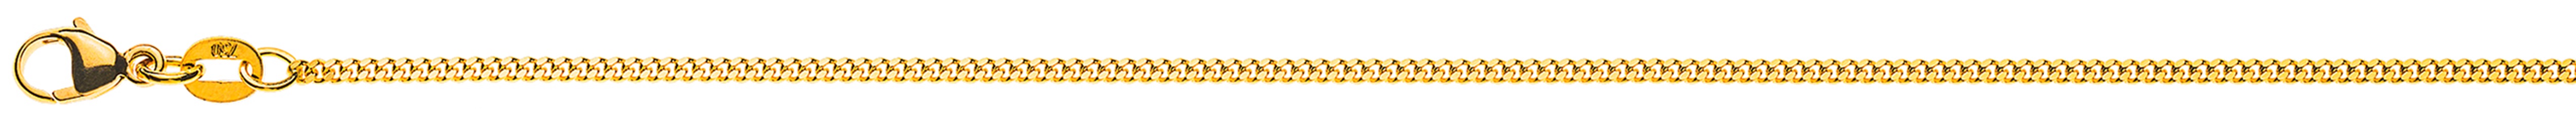 AURONOS Élégance Necklace yellow gold 14K curb chain polished 38cm 1.6mm